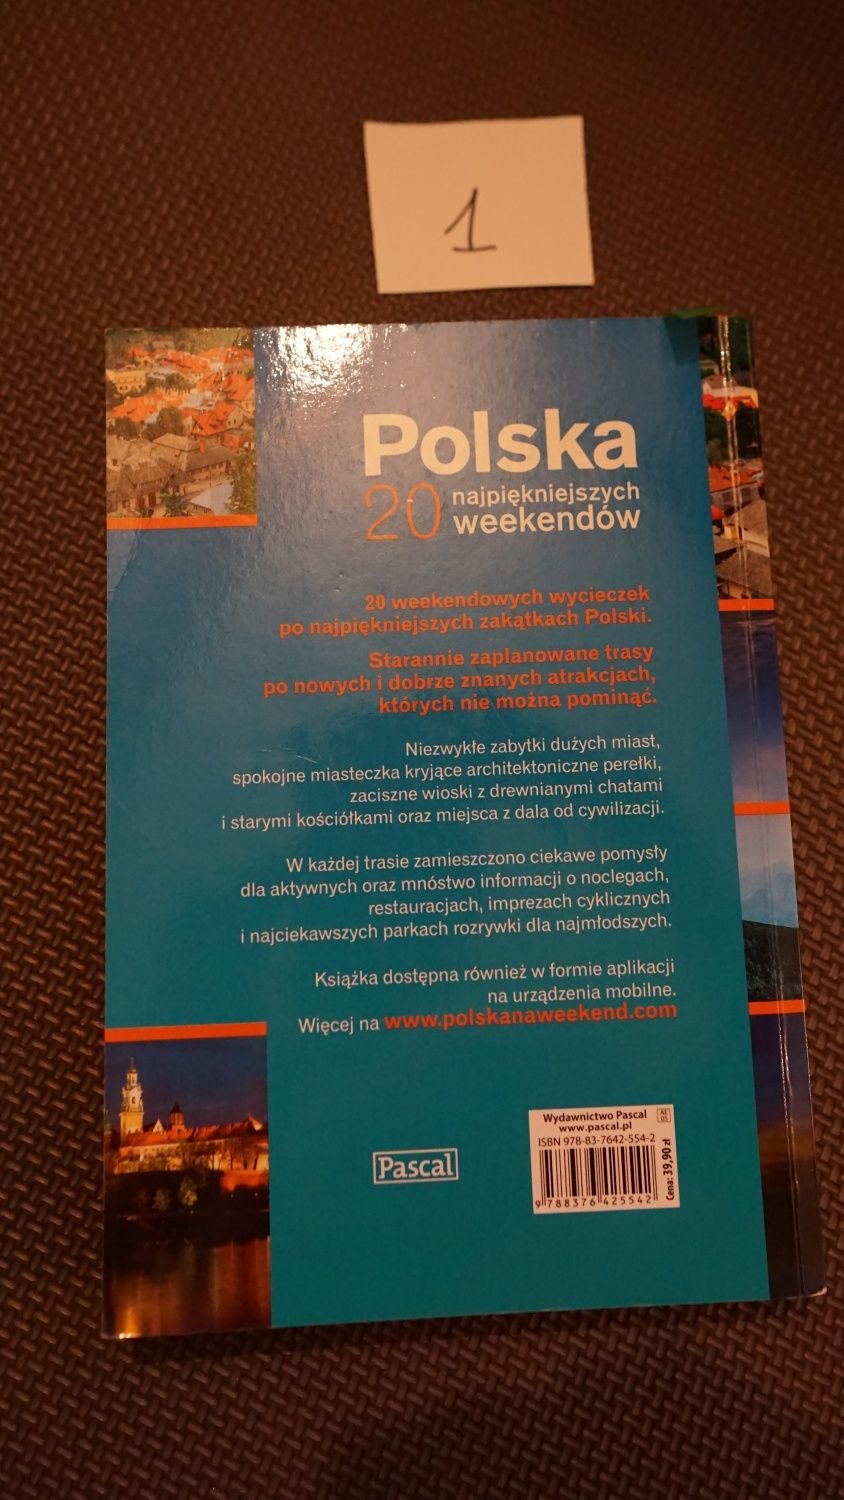 Polska 20 najpiękniejszych weekendów wyd. Pascal